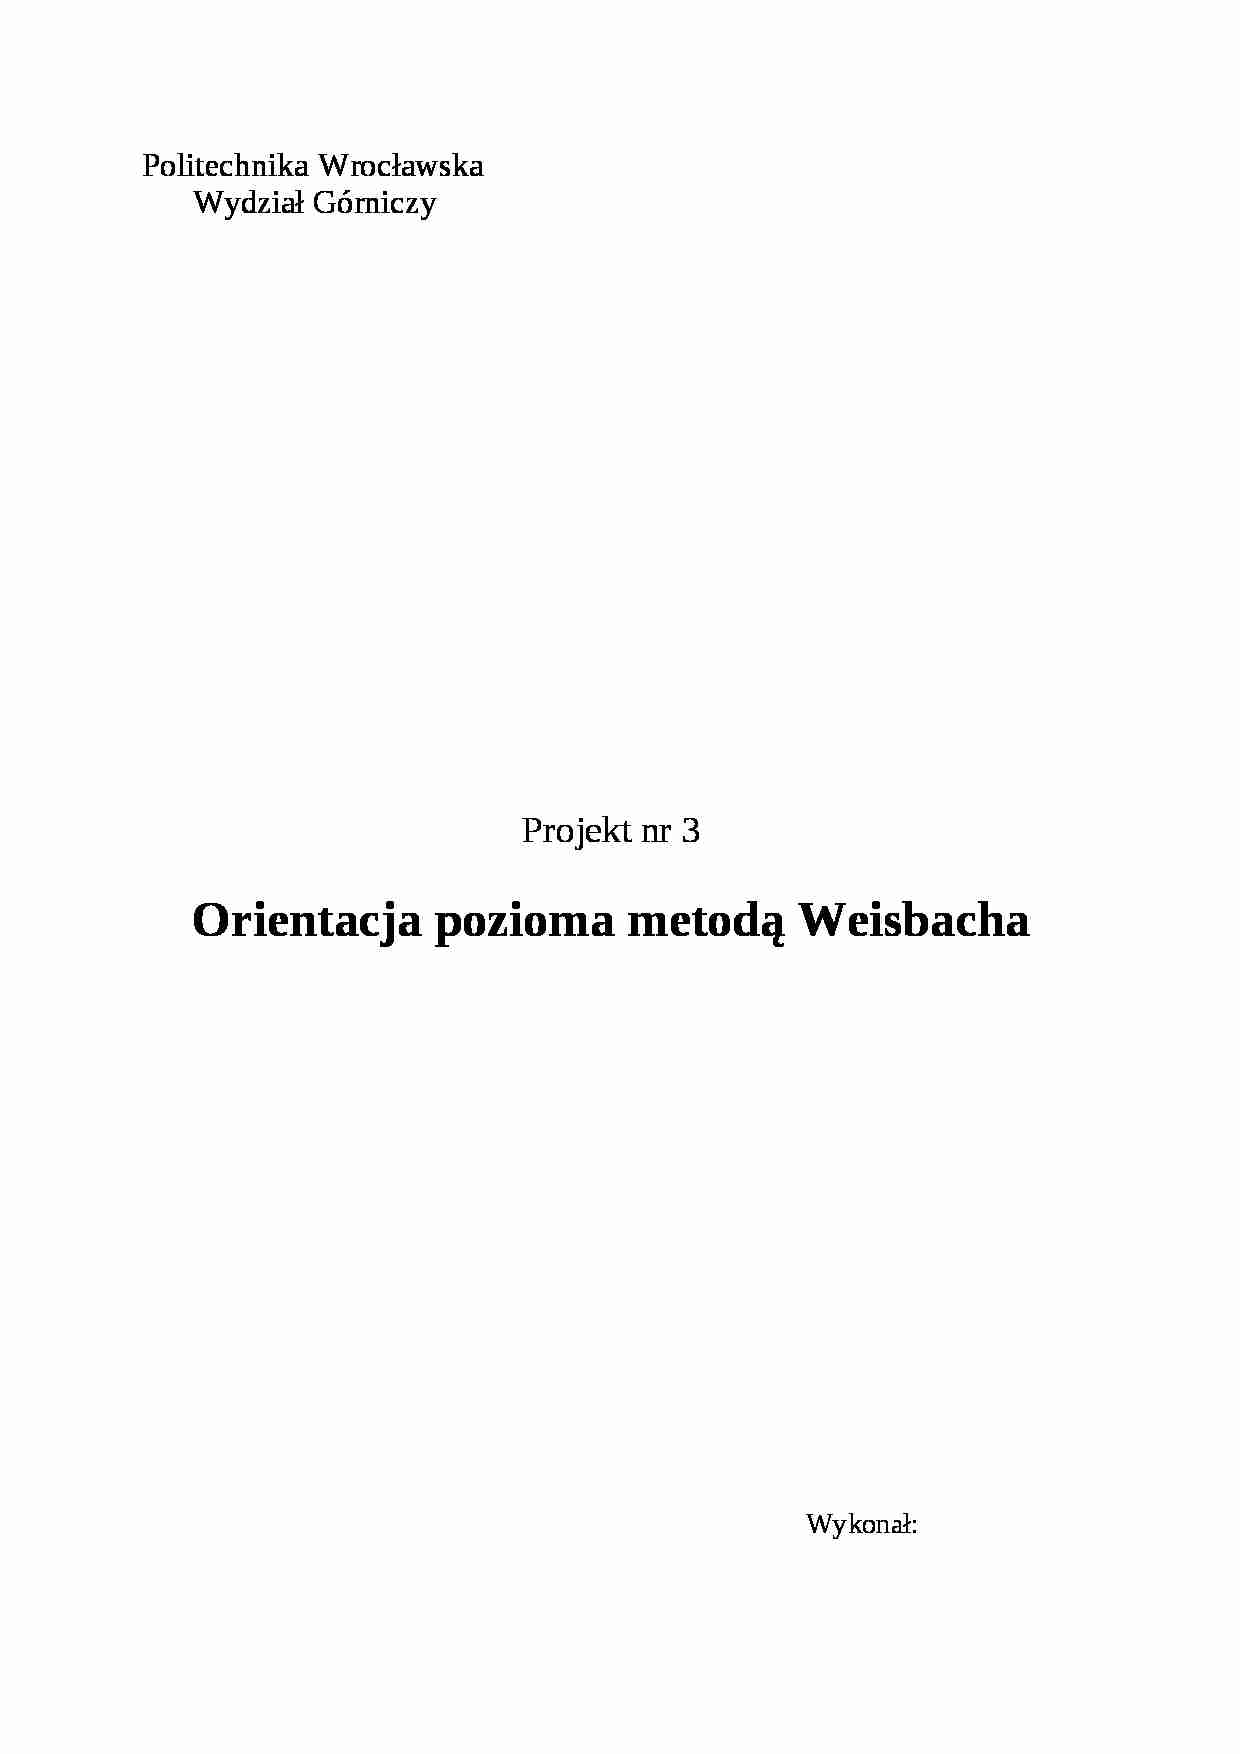 Orientacja pozioma metodą Weisbacha-projekt - strona 1